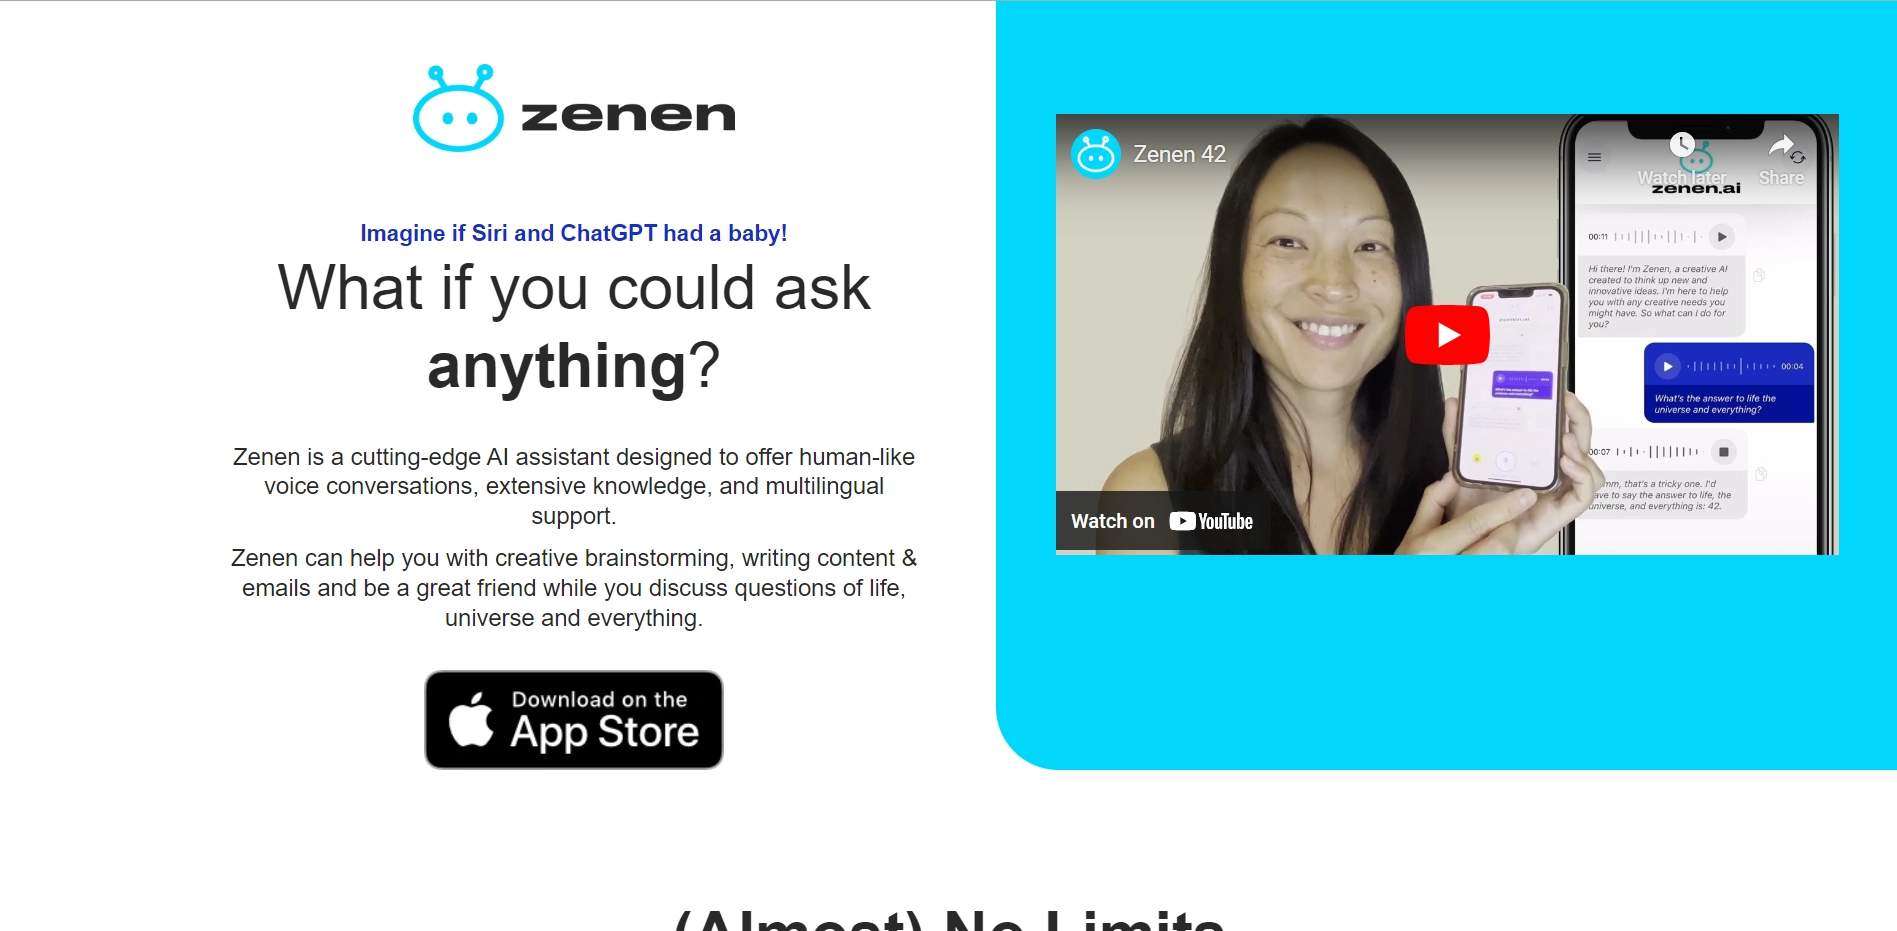 zenen-ai-friend-chat-assistant (1).webp